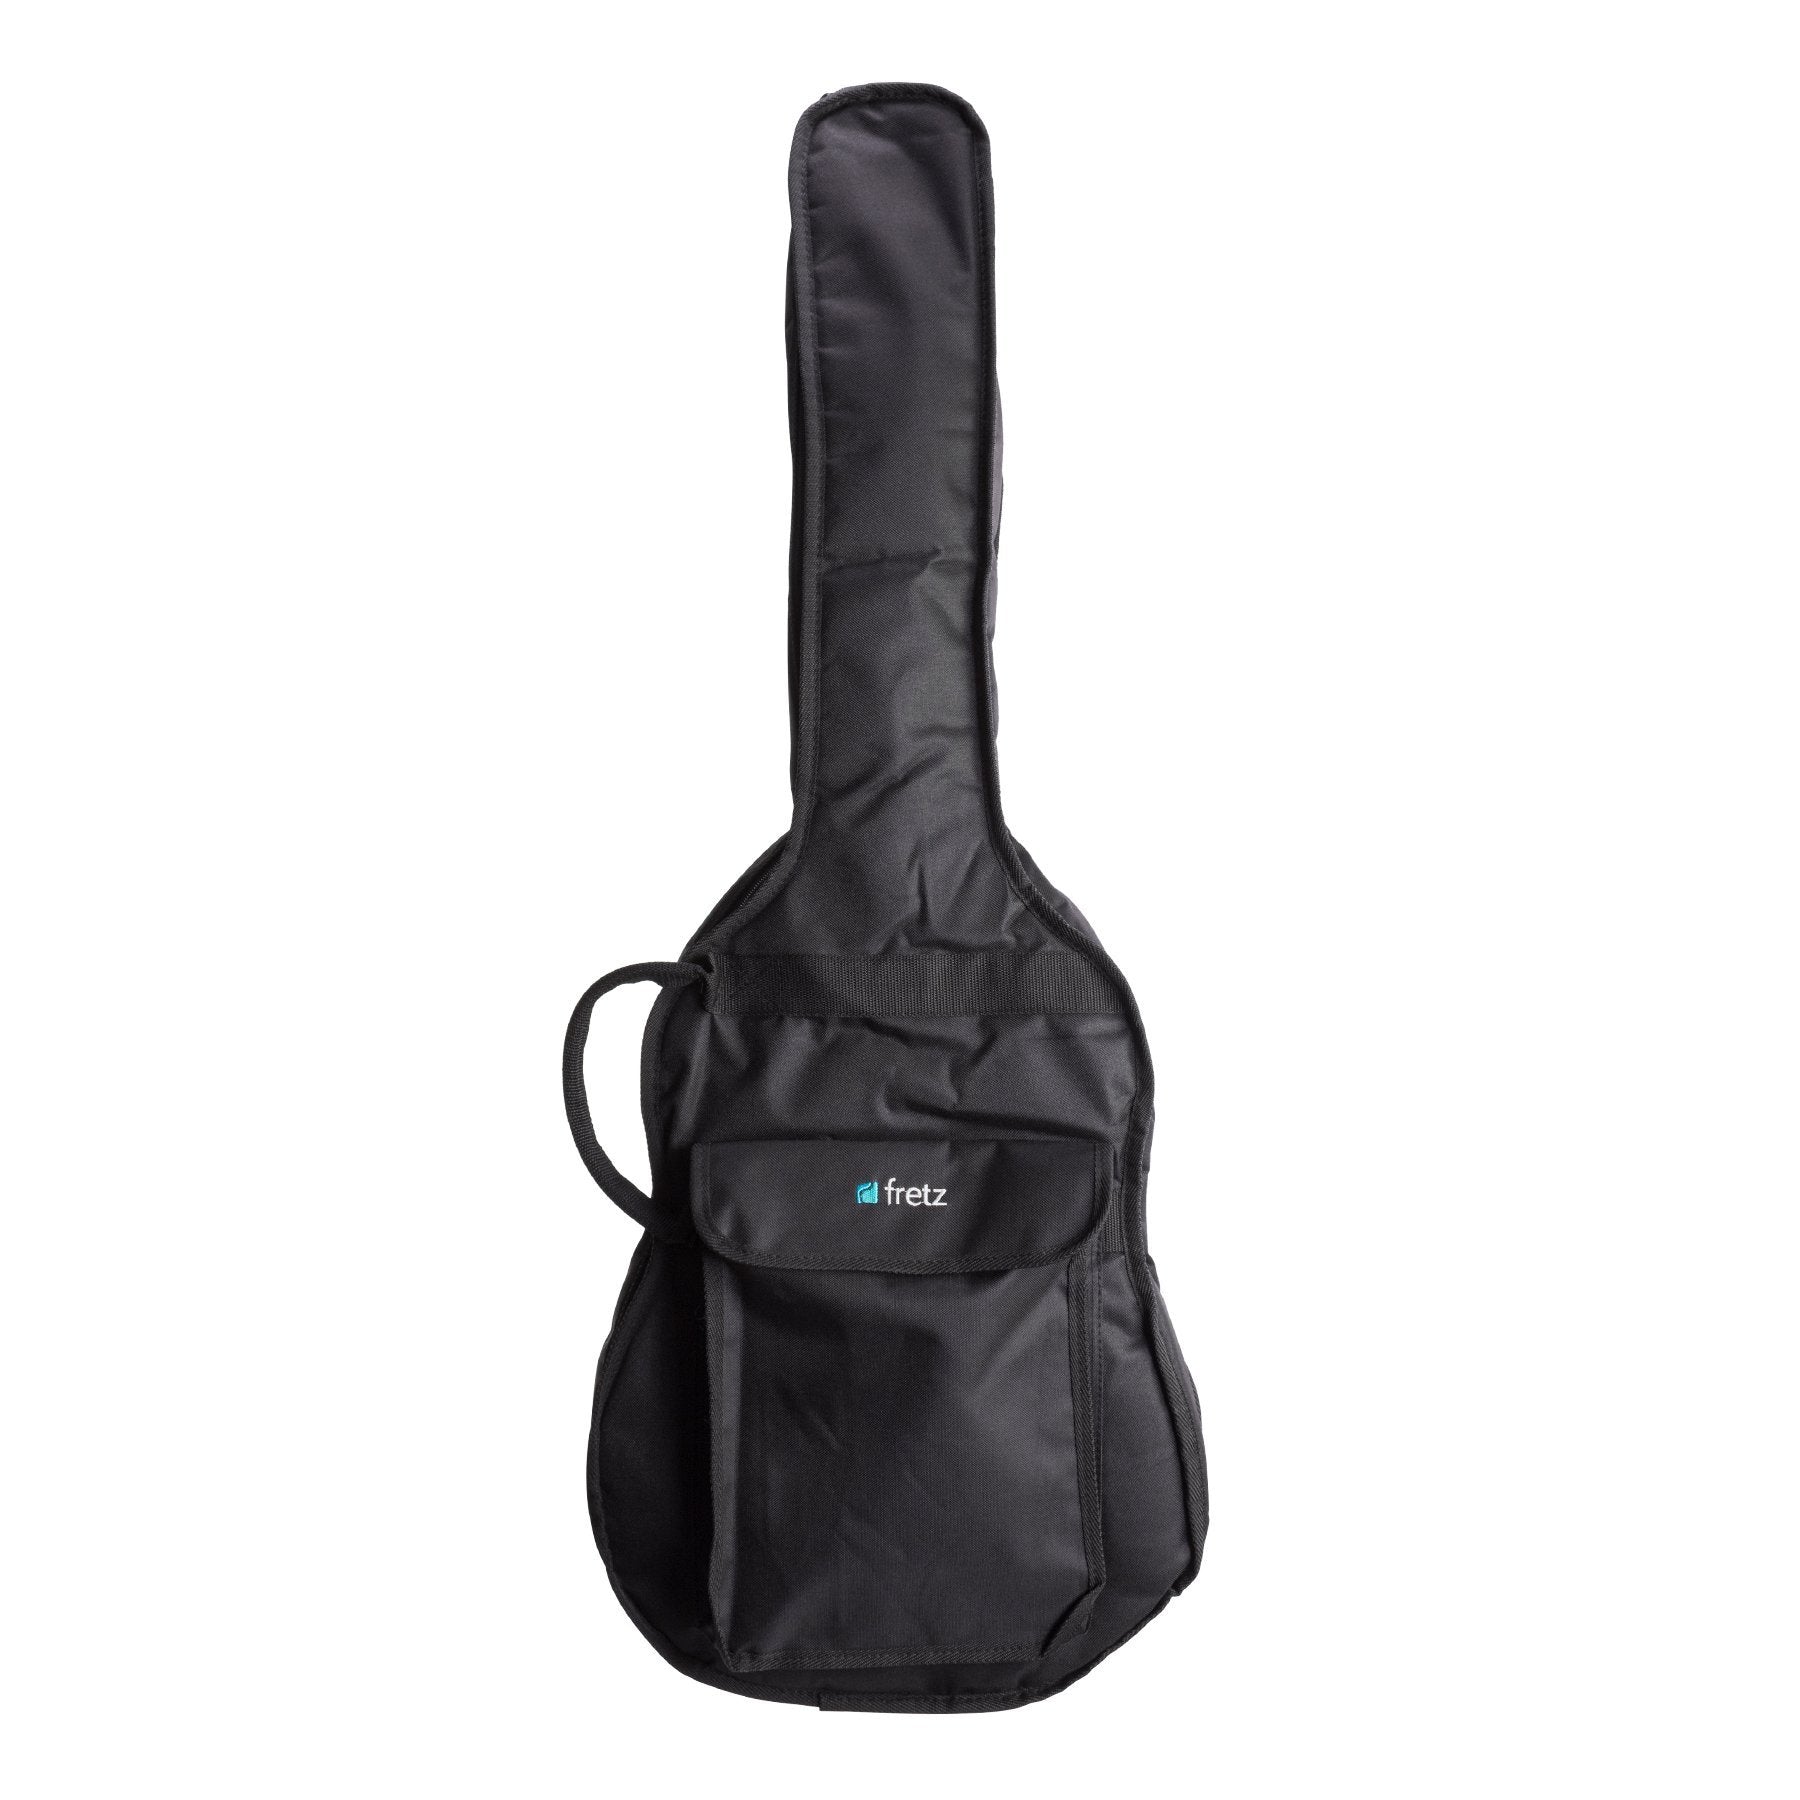 Fretz Heavy Duty 3/4 Classical Guitar Gig Bag (Black)-FGB-3/4C8-BLK